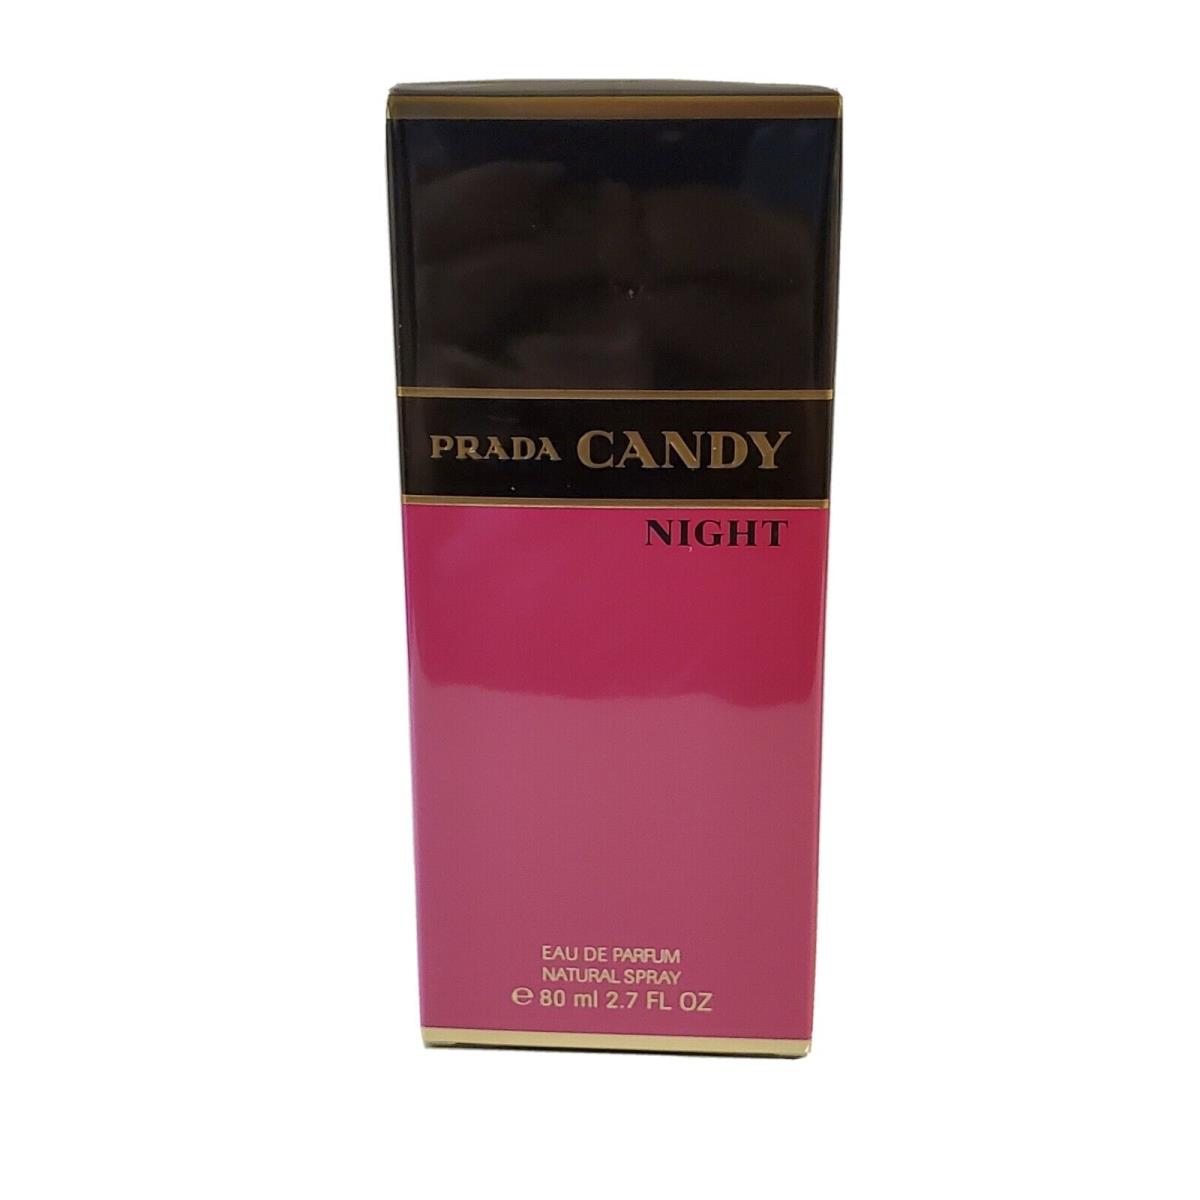 Prada Candy Night 2.7OZ Edp Spray BY Prada For Women